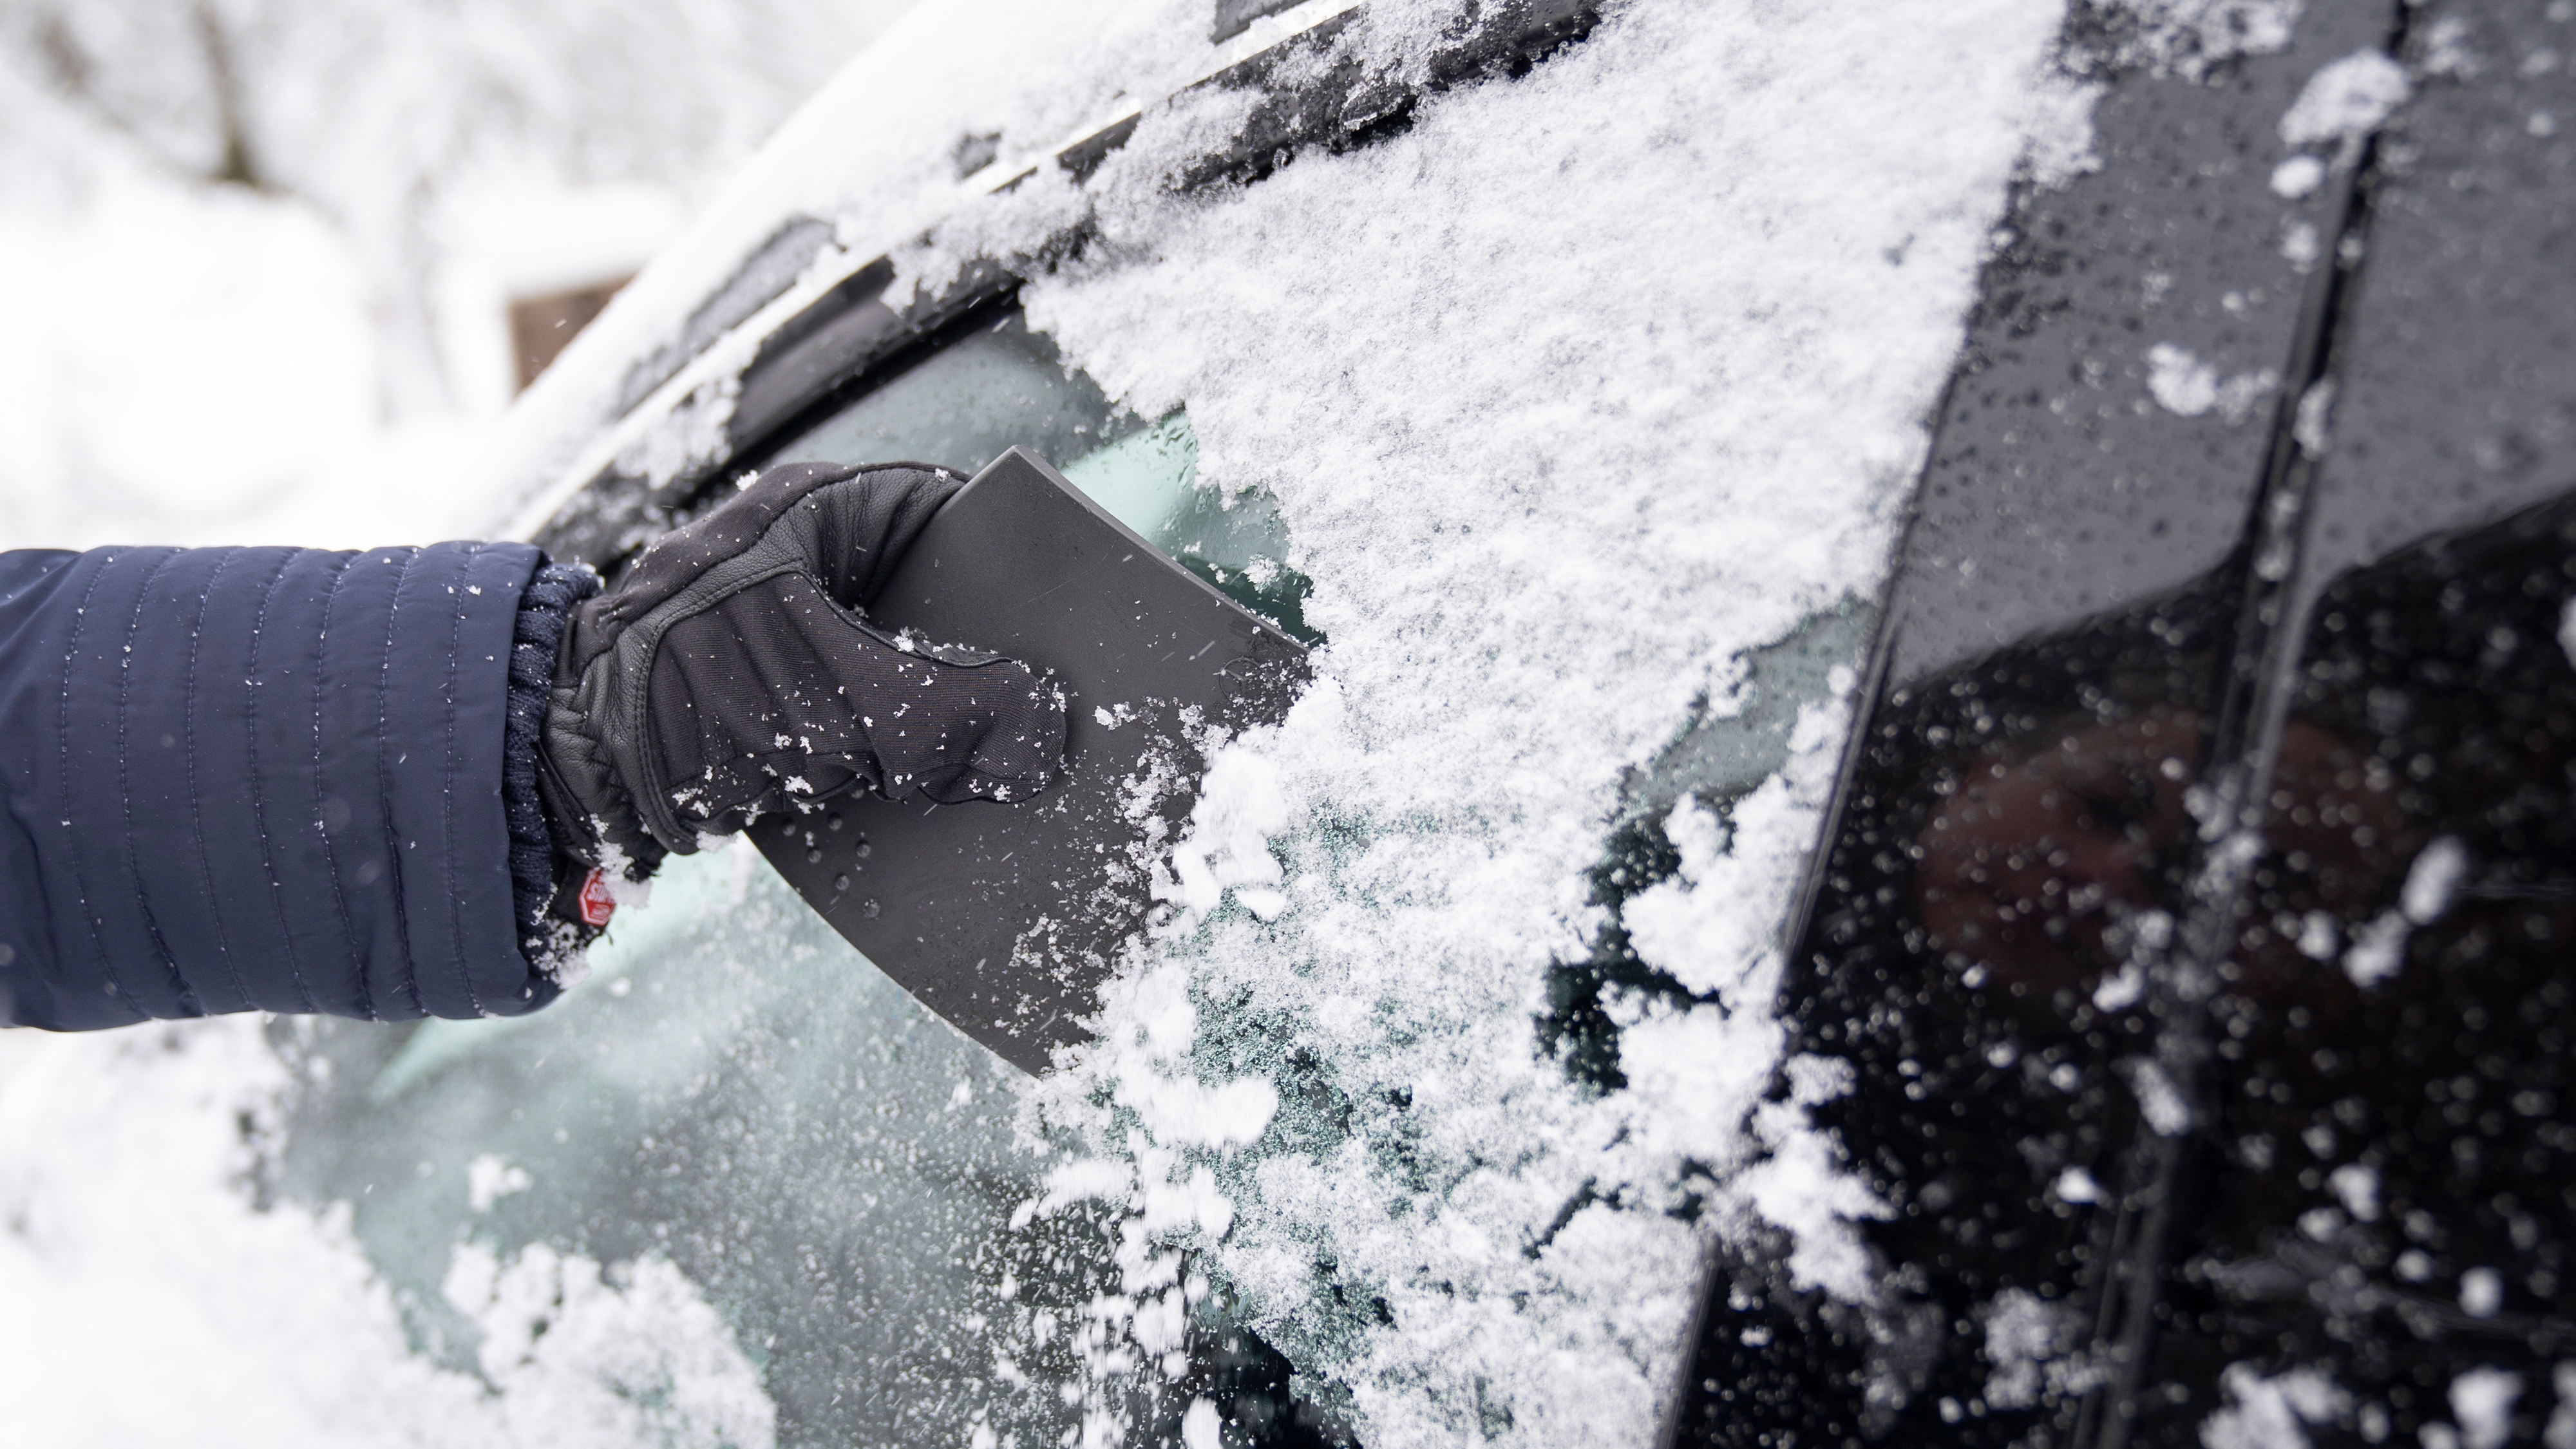 Eis vom Auto entfernen: Kratzen, Wasser, Spray – was wirkt am besten?